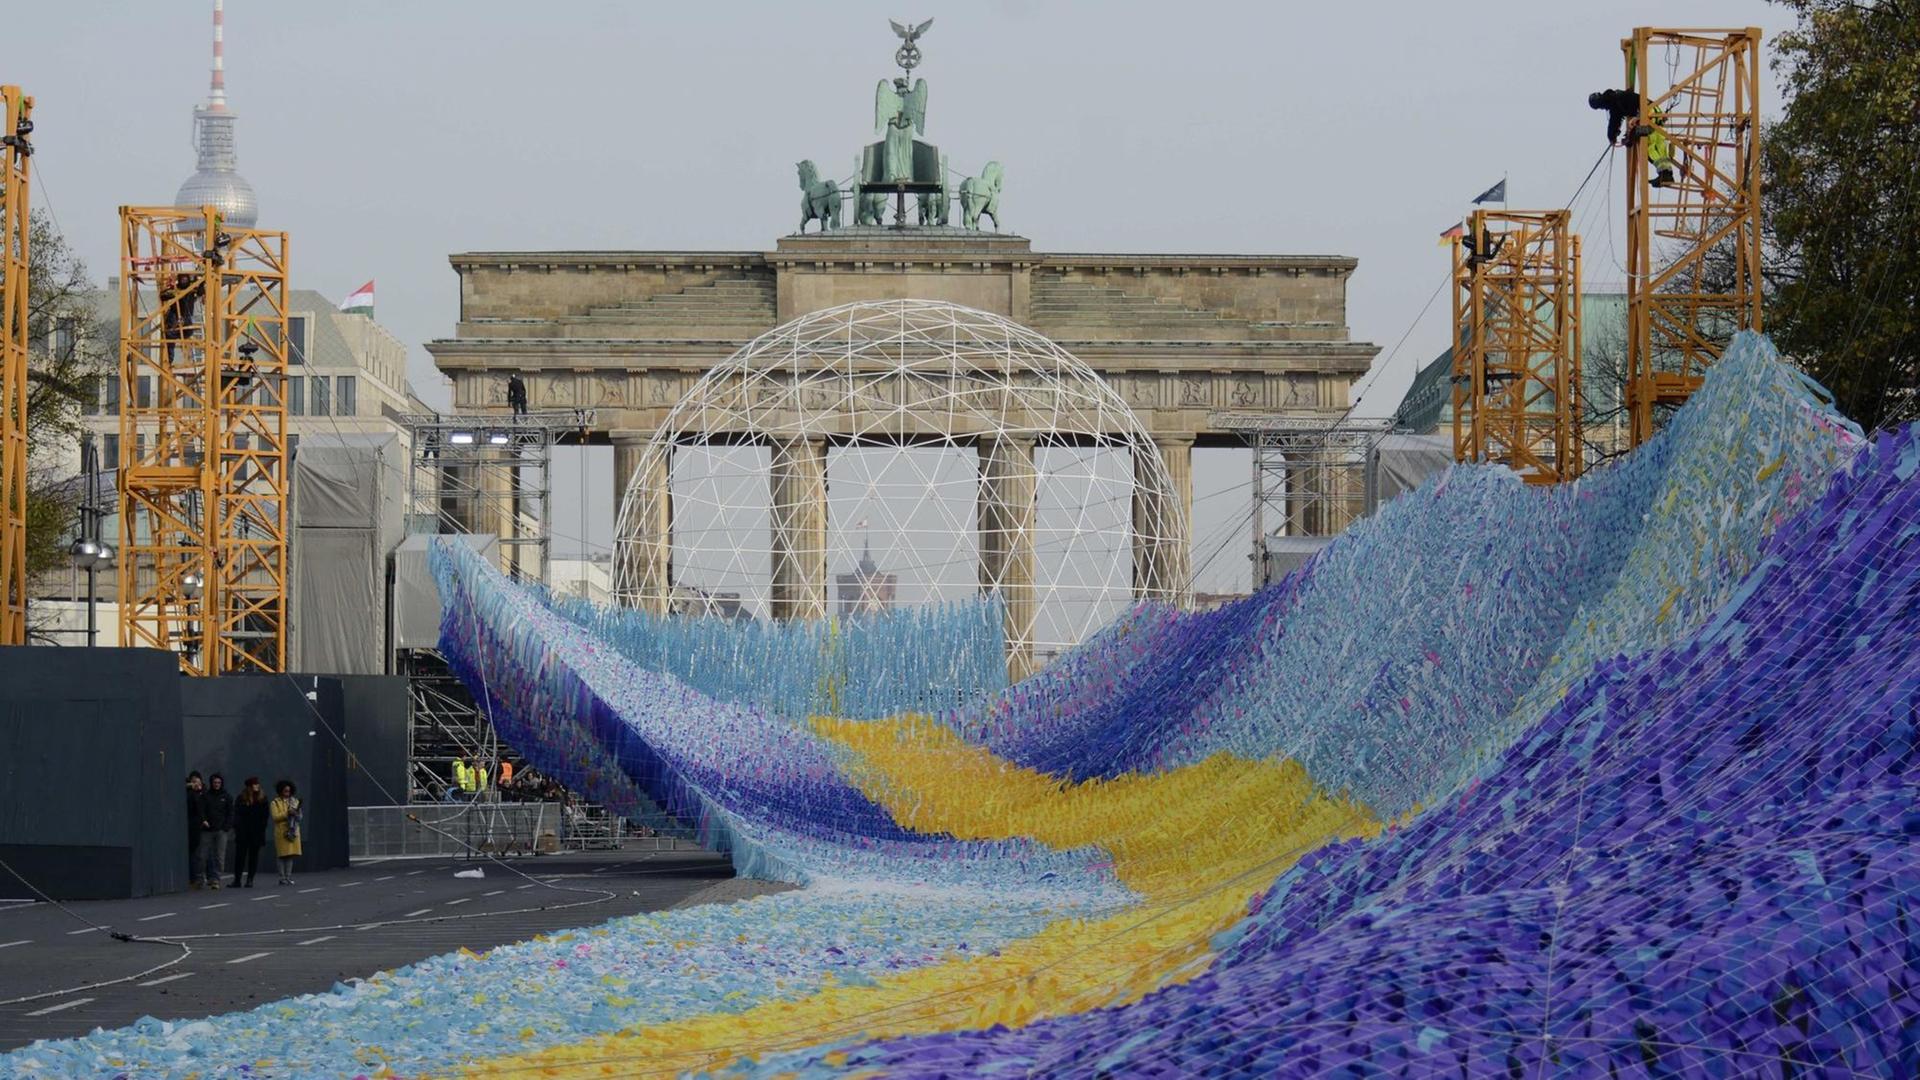 Die Installation "Visions in Motion", eine etwa 100 Meter lange Welle aus Plastikfähnchen, befindet sich vor dem Brandenburger Tor im Aufbau.